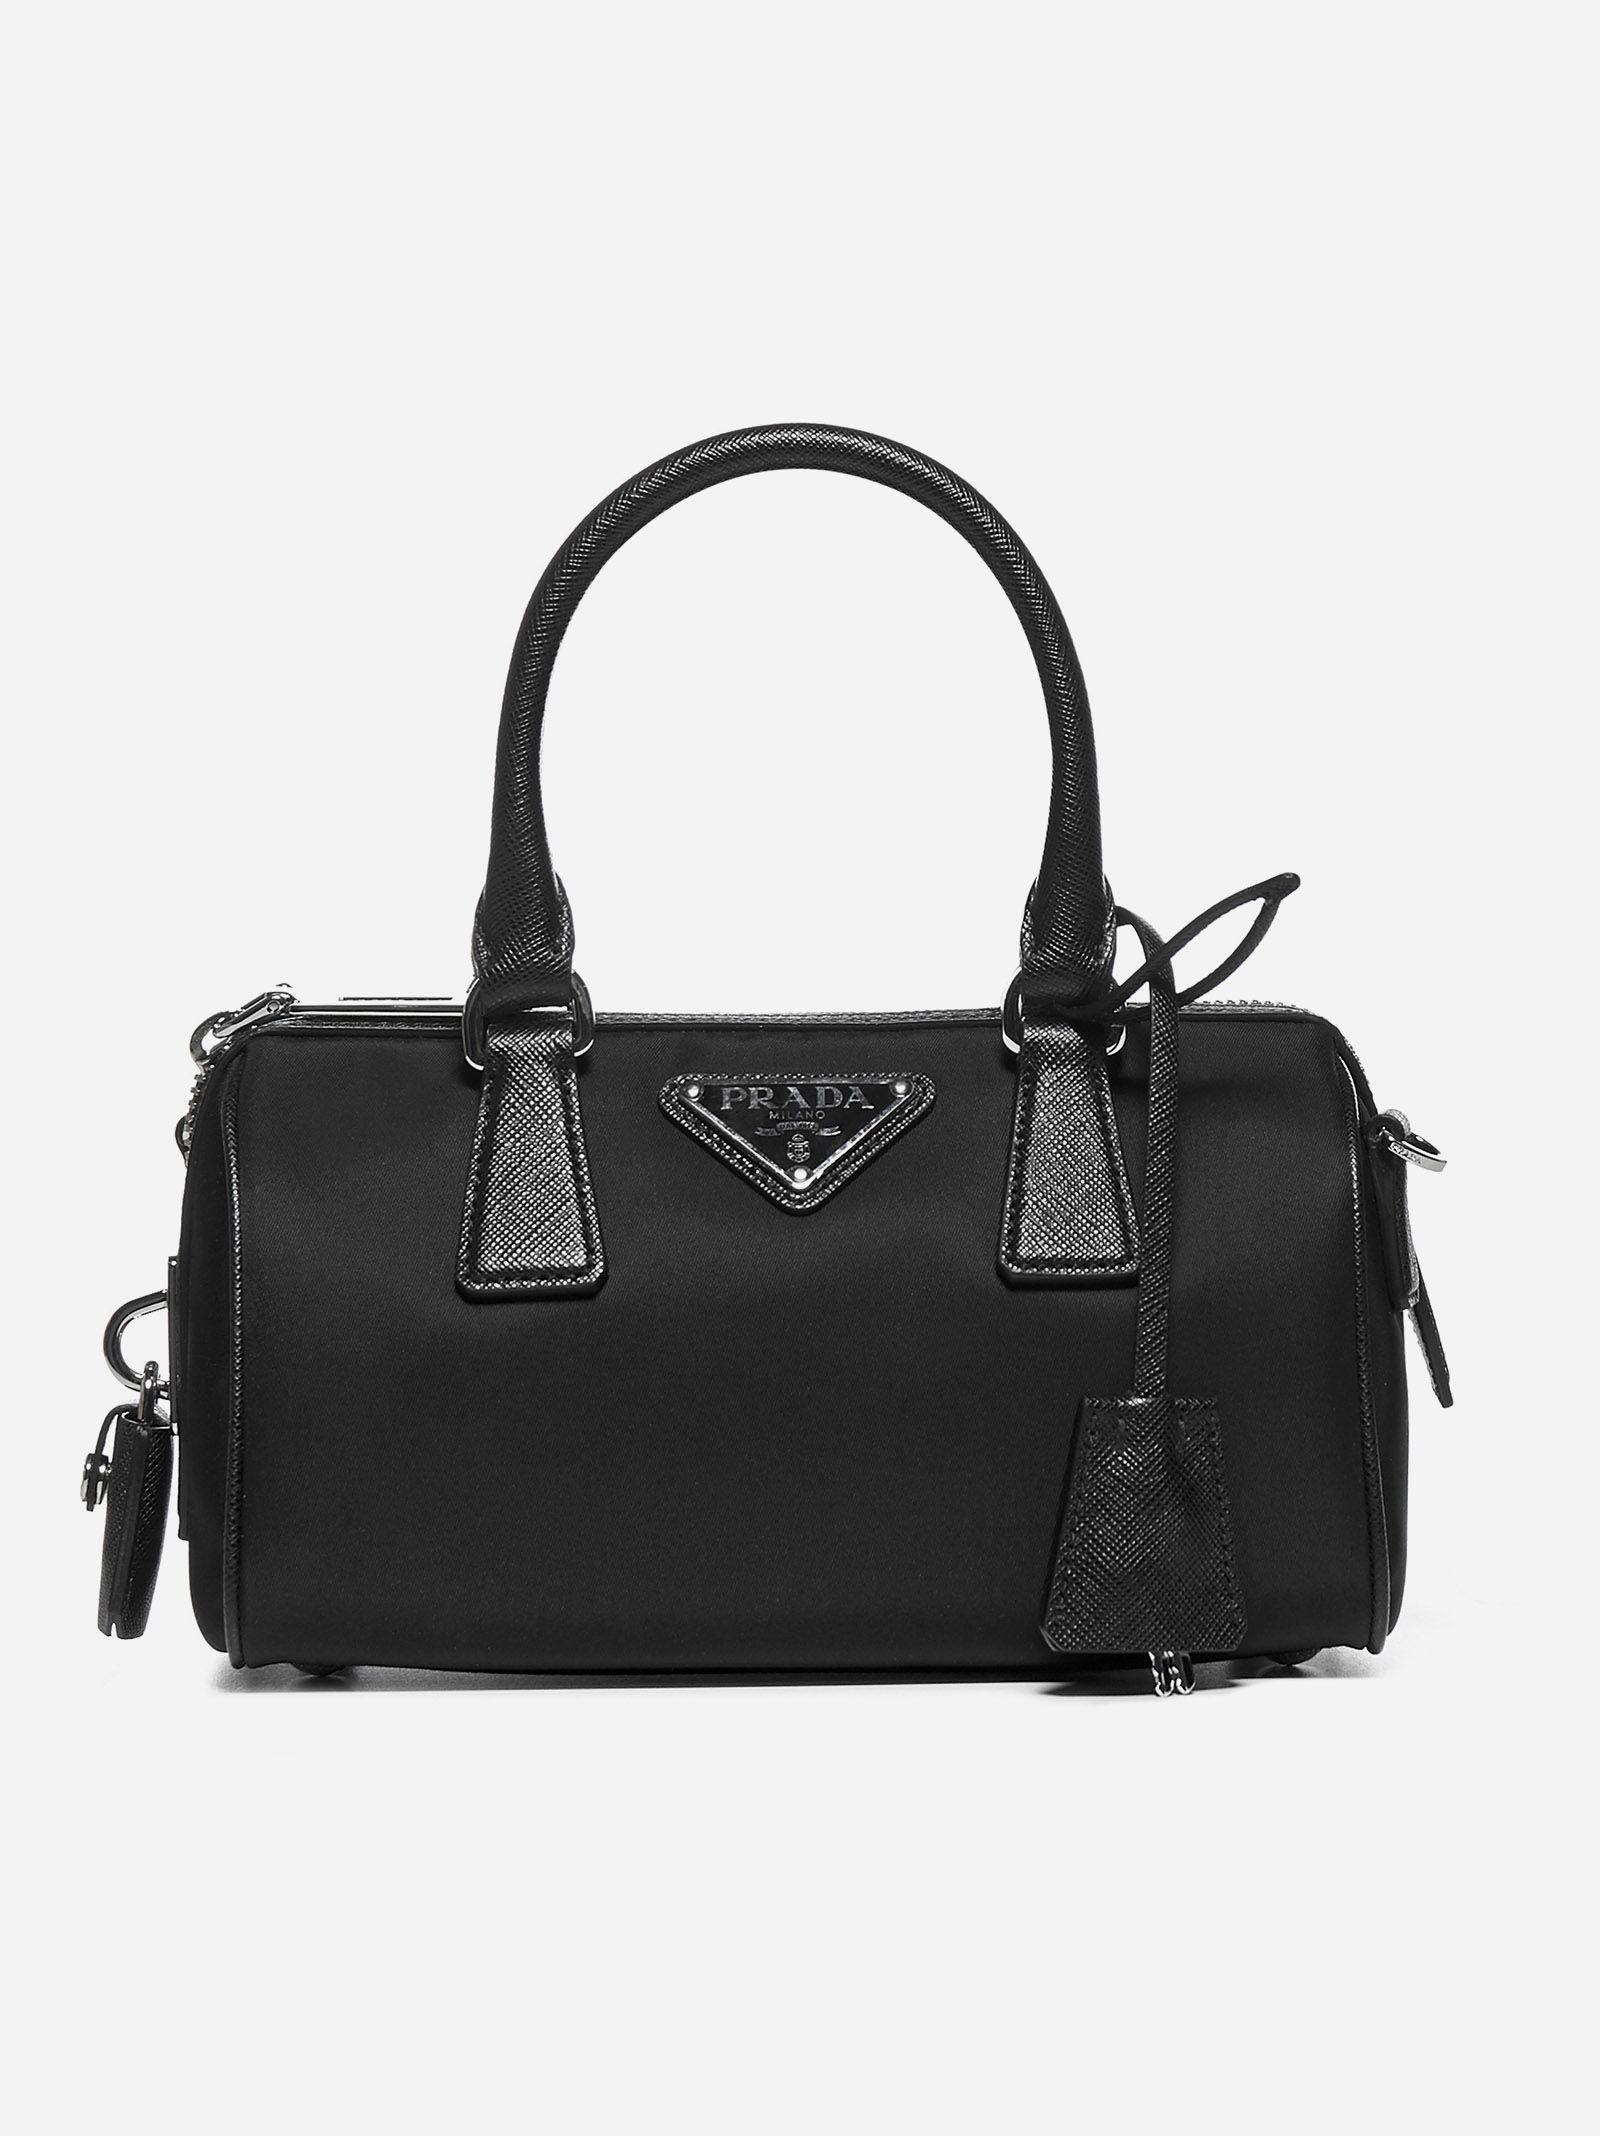 Prada Re-edition 2005 Nylon And Saffiano Leather Bag in Black